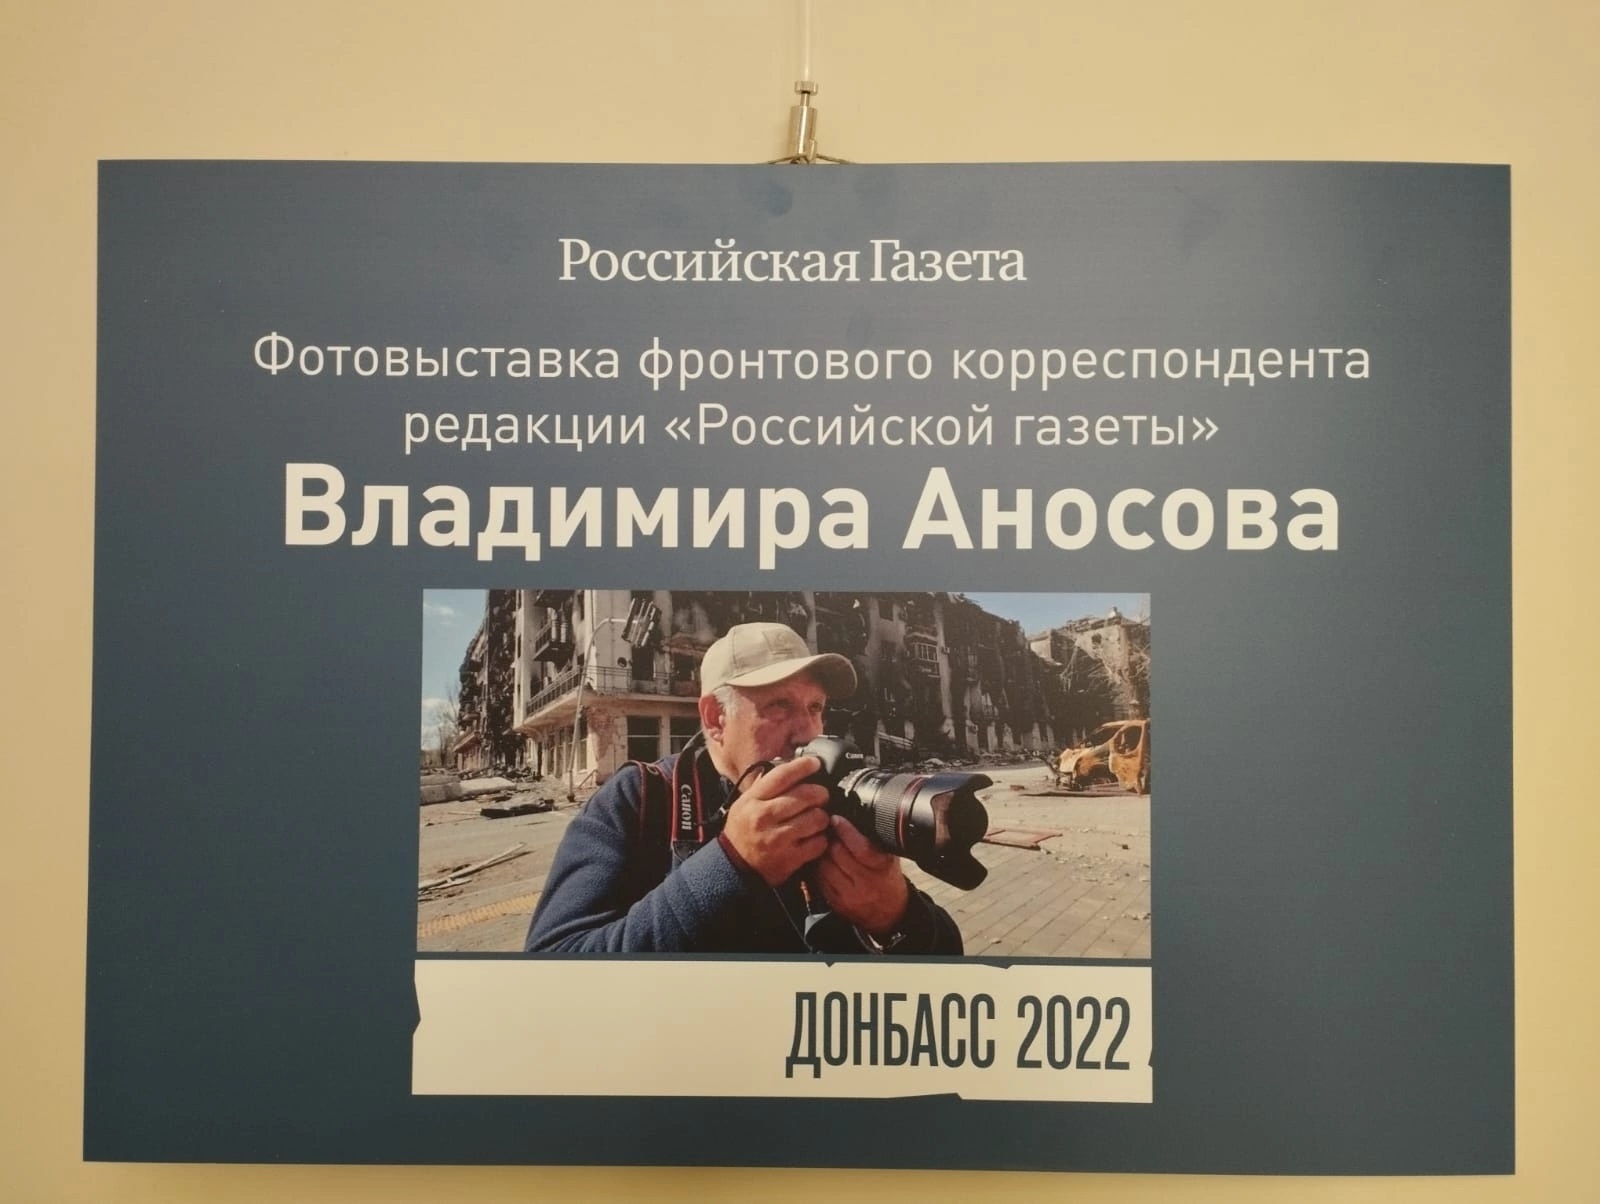 Пушкинская карта. Посещение выставки &amp;quot;Донбасс-2022&amp;quot;.